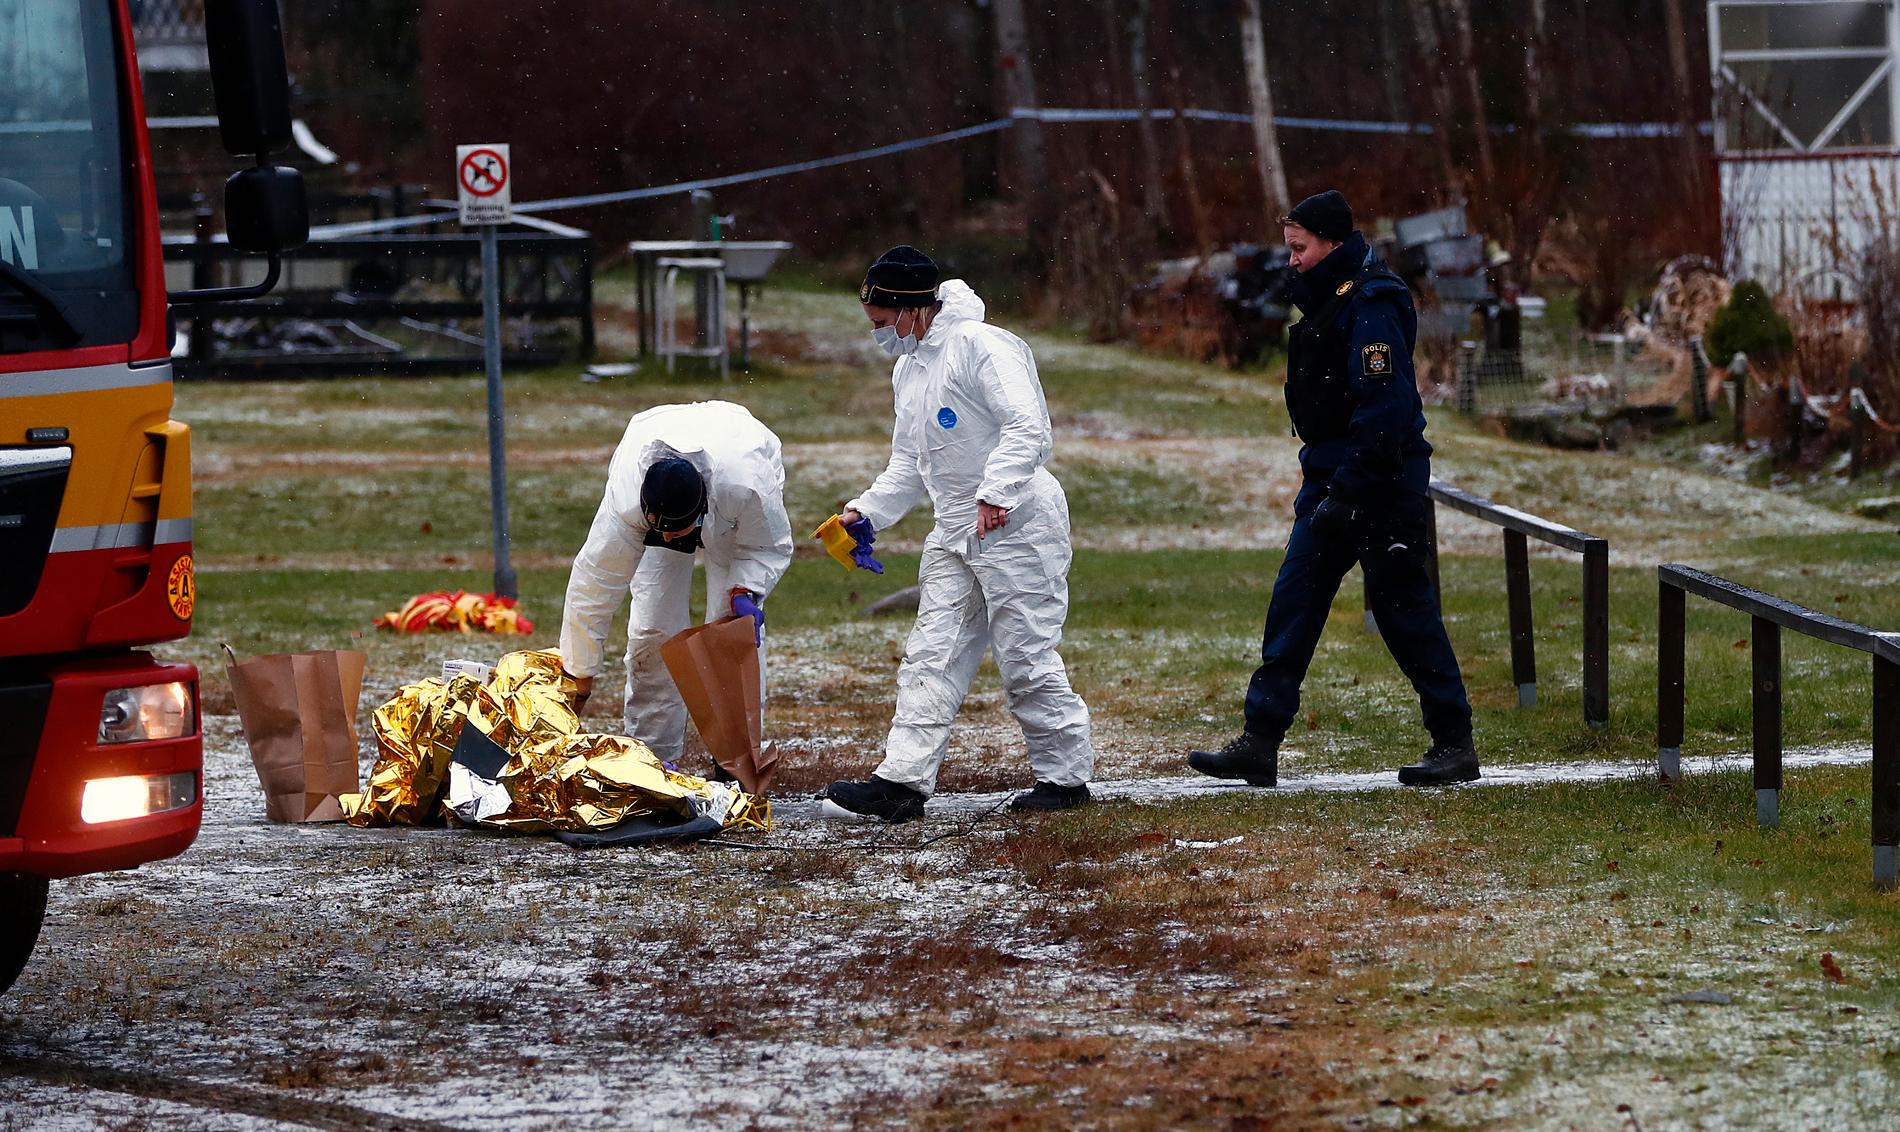 Mannen som sköts hittades död utomhus i Kvibergsområdet i Göteborg med skottskador på kroppen. Nu tror man att en sexfälla kan ha lockat honom dit.